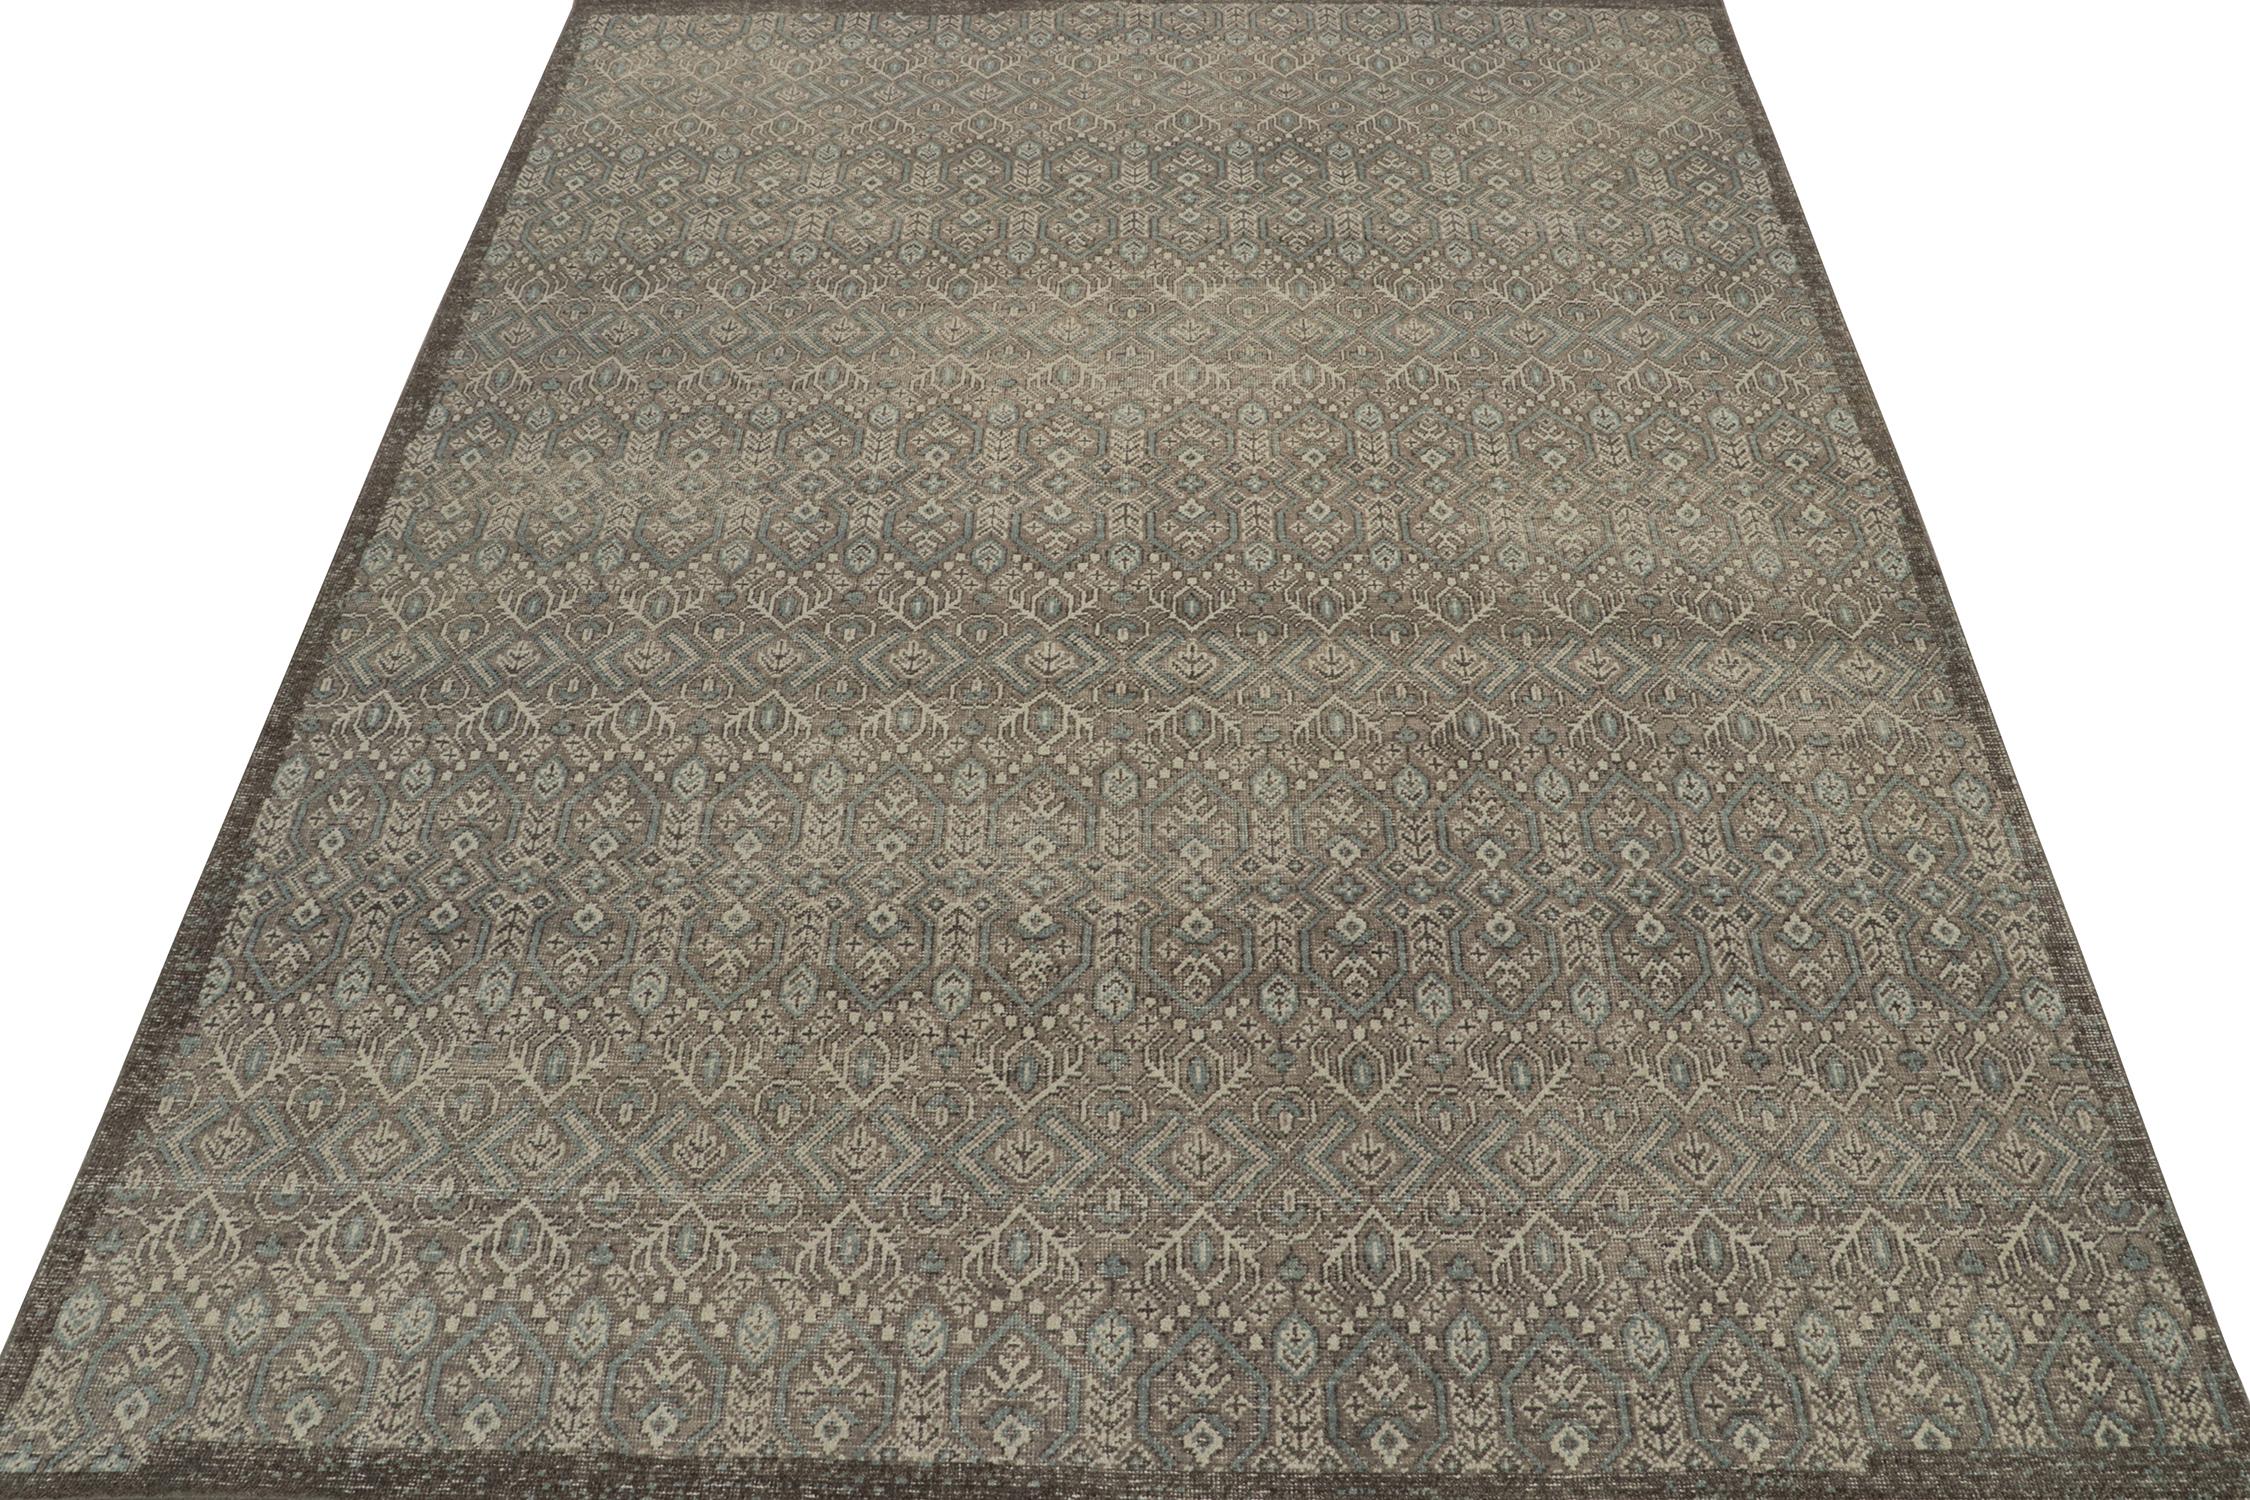 Ce tapis 9x12 est un nouvel ajout majestueux à la collection Homage de Rug & Kilim. Noué à la main en laine et en coton, il reprend les styles de tapis tribaux antiques dans une nouvelle version du design rustique moderne.

Plus loin dans le Design